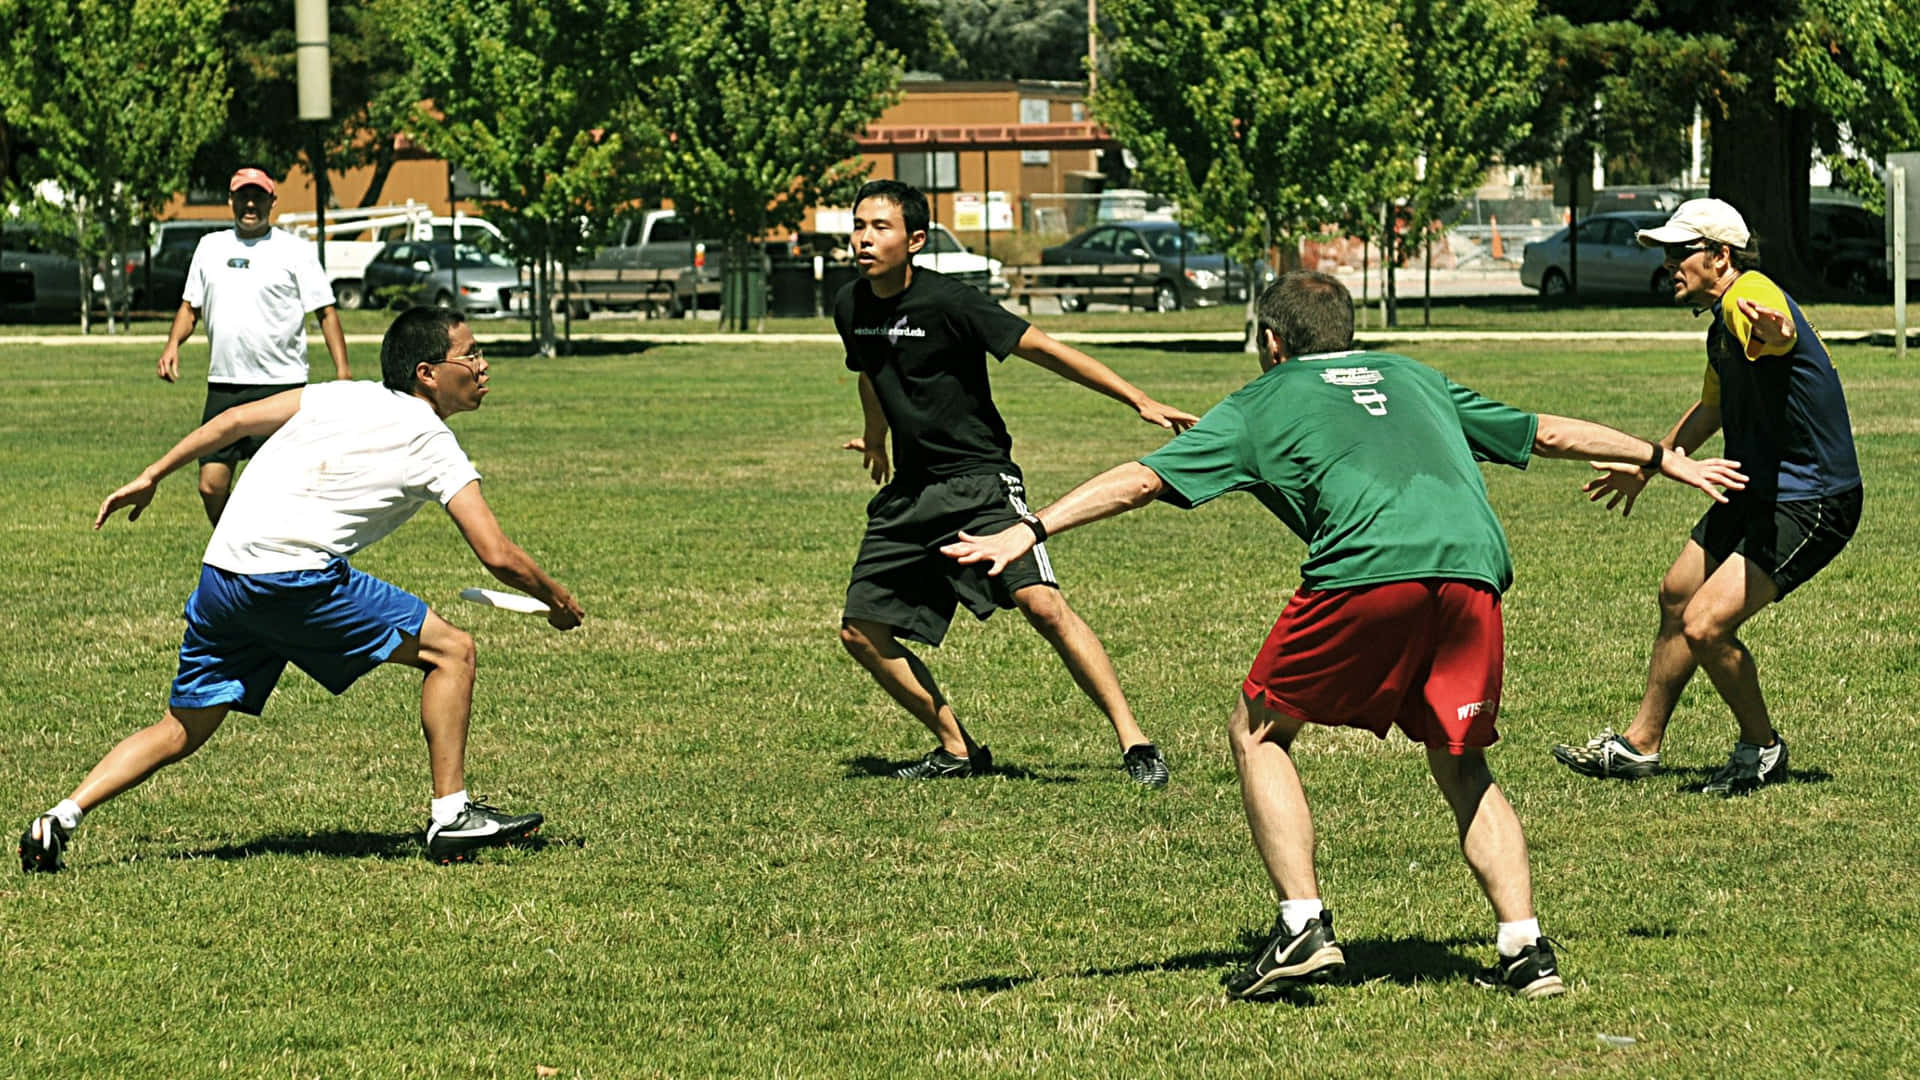 Ungruppo Di Persone Che Giocano A Frisbee